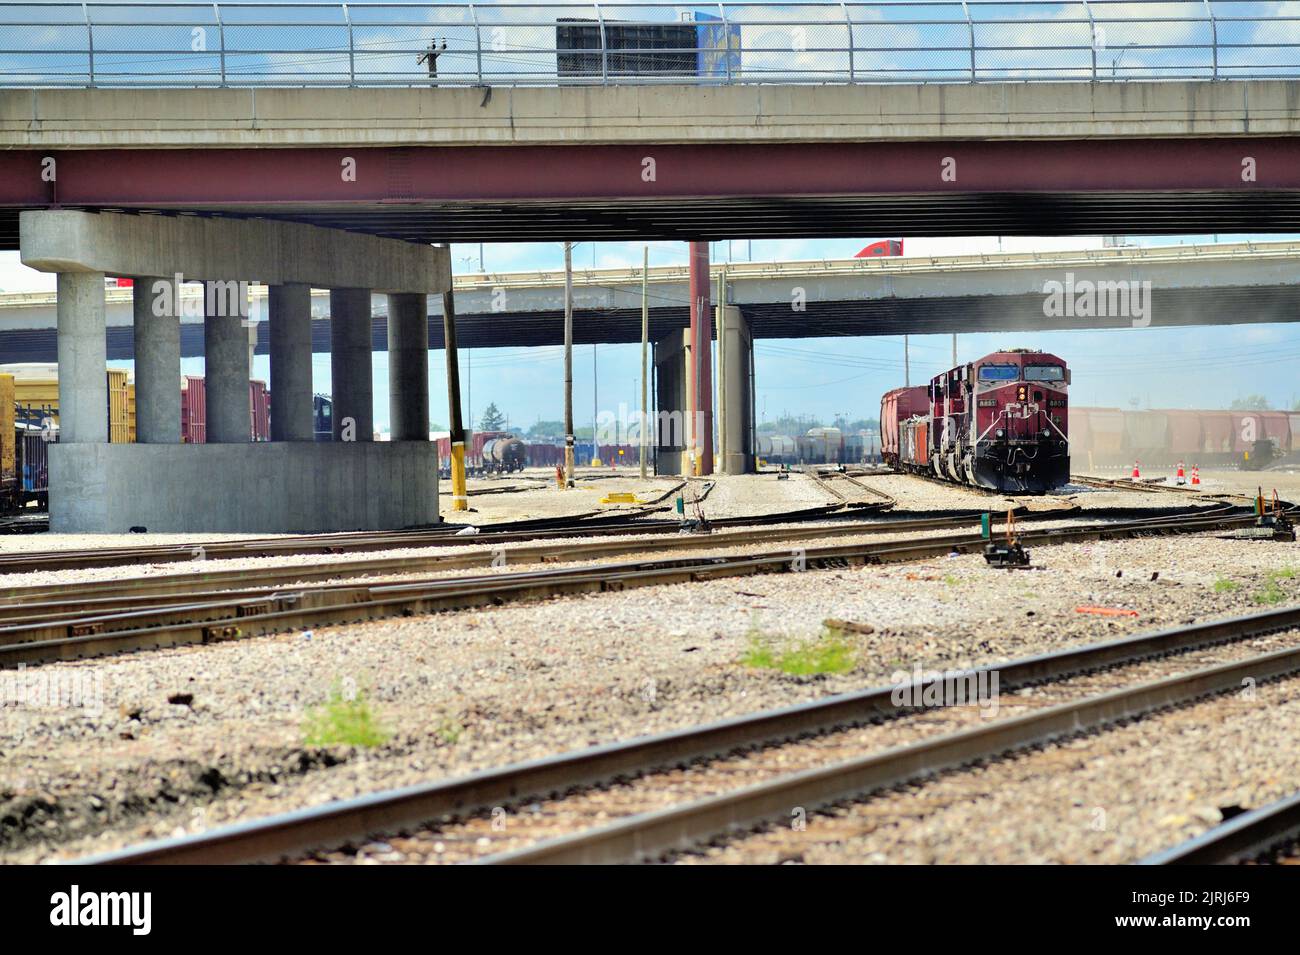 Franklin Park, Illinois, États-Unis. Les locomotives du chemin de fer canadien Pacifique sont placées sous un passage autoroutier menant à un train de marchandises en attente de départ d'une cour. Banque D'Images